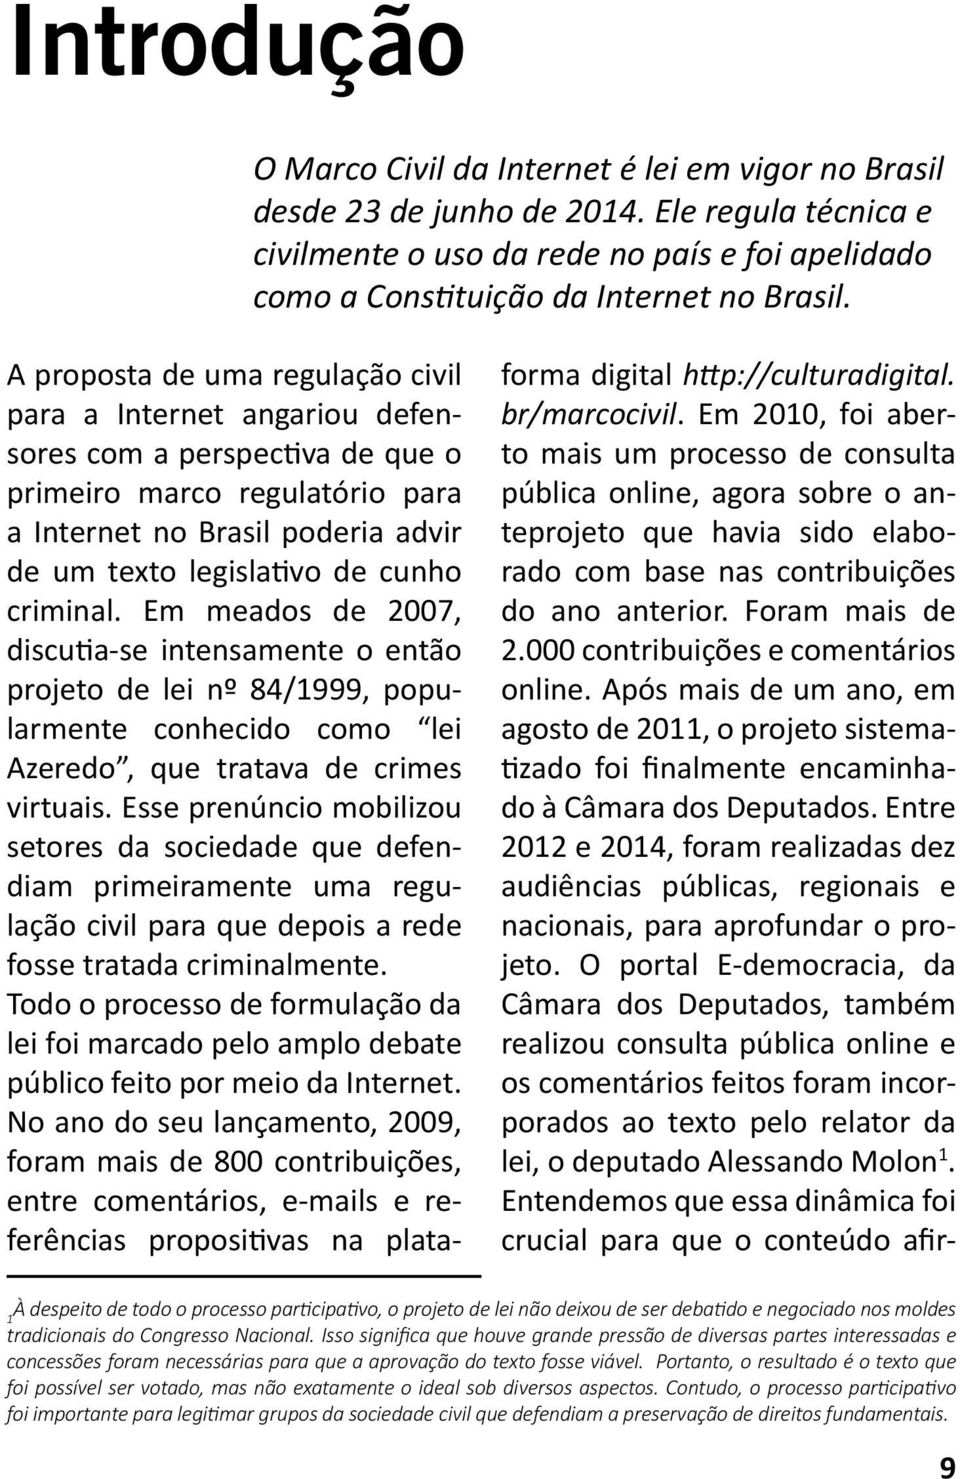 A proposta de uma regulação civil para a Internet angariou defensores com a perspectiva de que o primeiro marco regulatório para a Internet no Brasil poderia advir de um texto legislativo de cunho